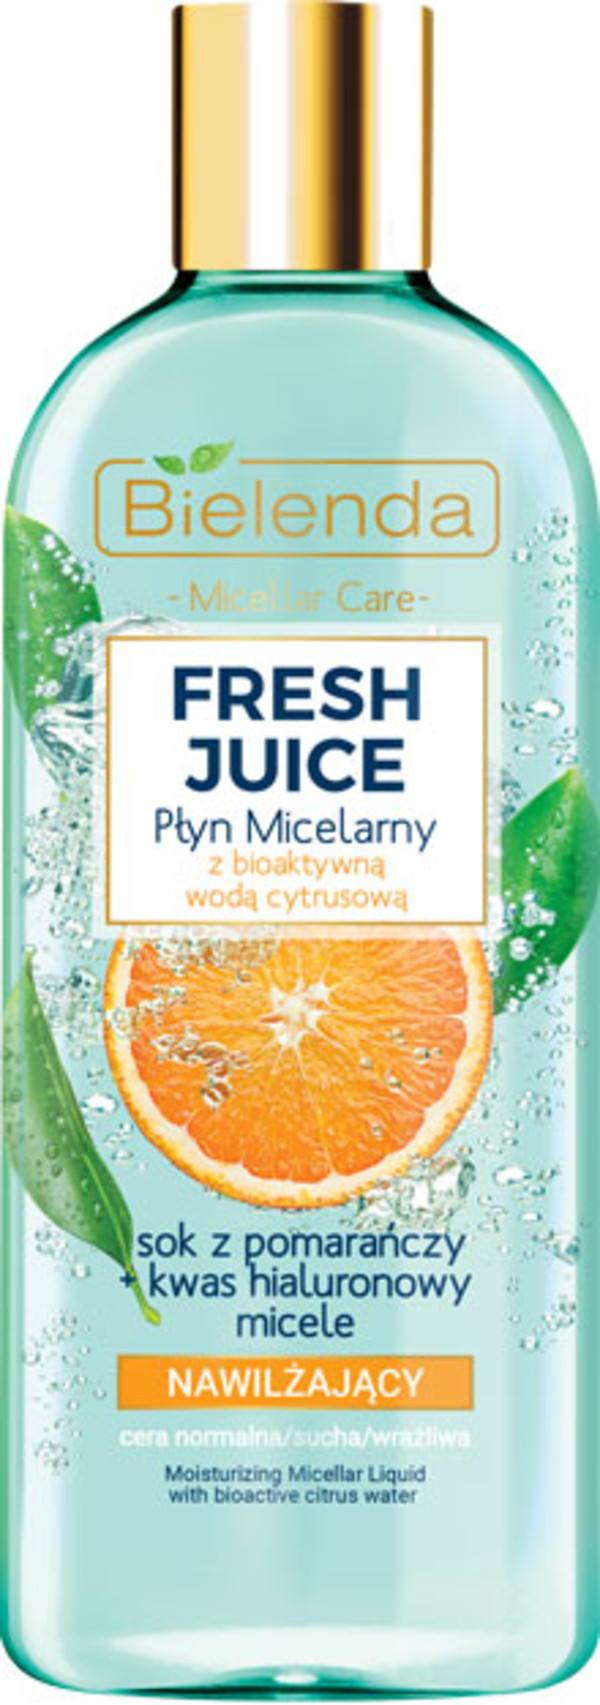 Fresh Juice Hydro-esencja nawilżająca z wodą cytrusową Pomarańcza